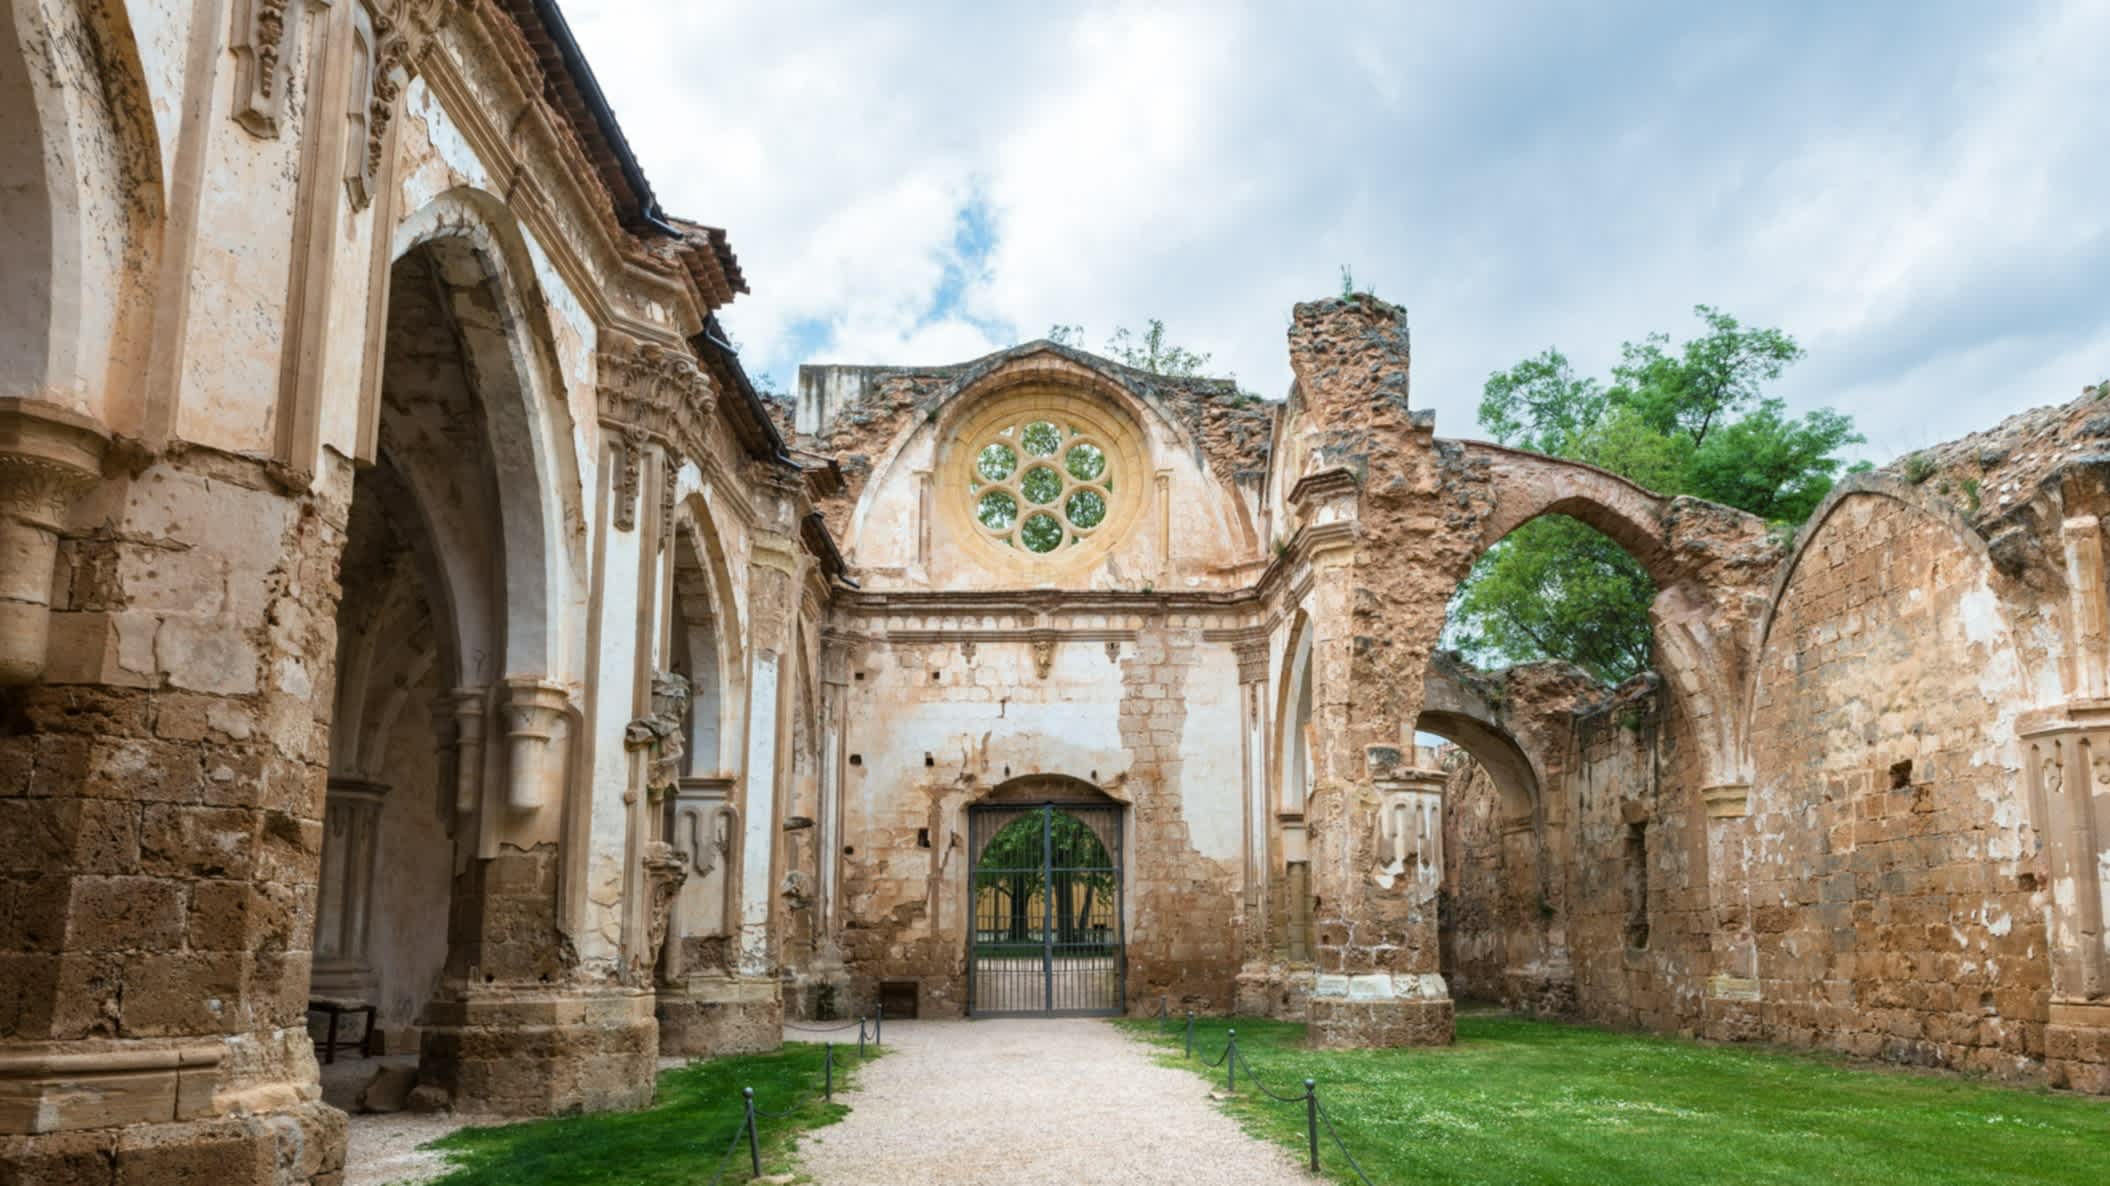 Ruinen des Monasterio de Piedras (Kloster Unserer Lieben Frau von Stein) in Aragonien, Spanien.

